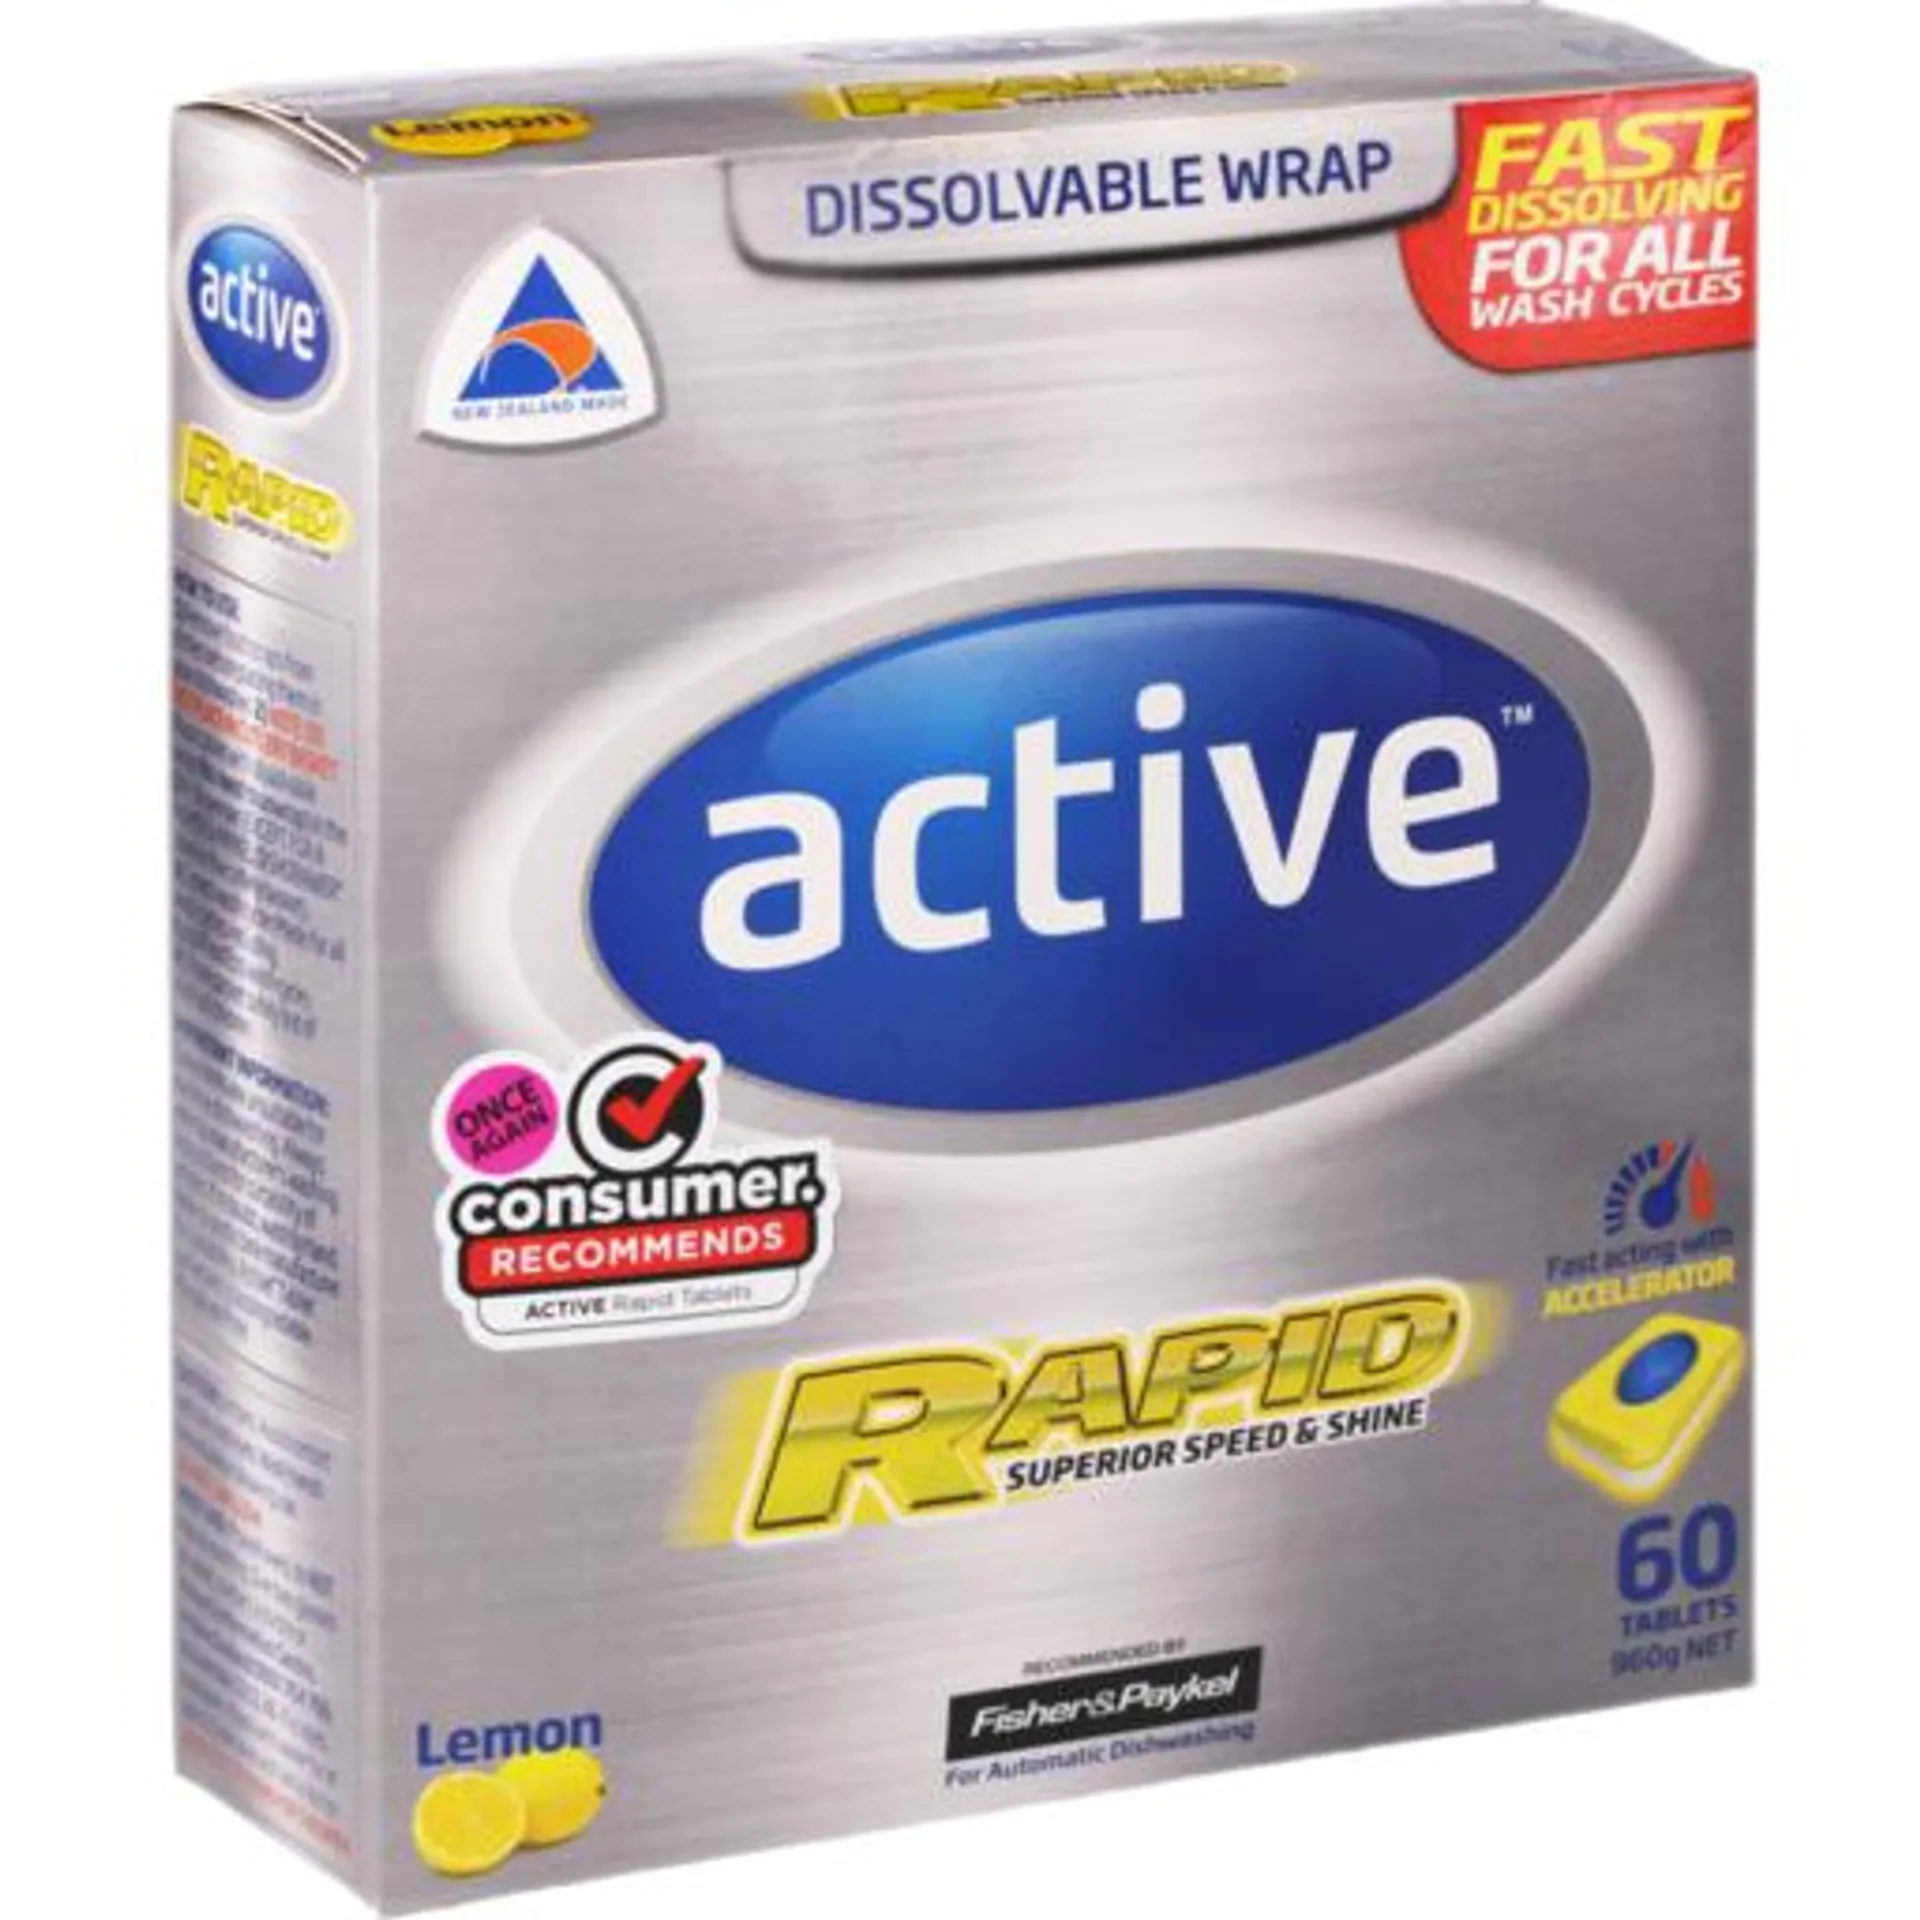 Active Tablets Rapid Lemon 60 Pack